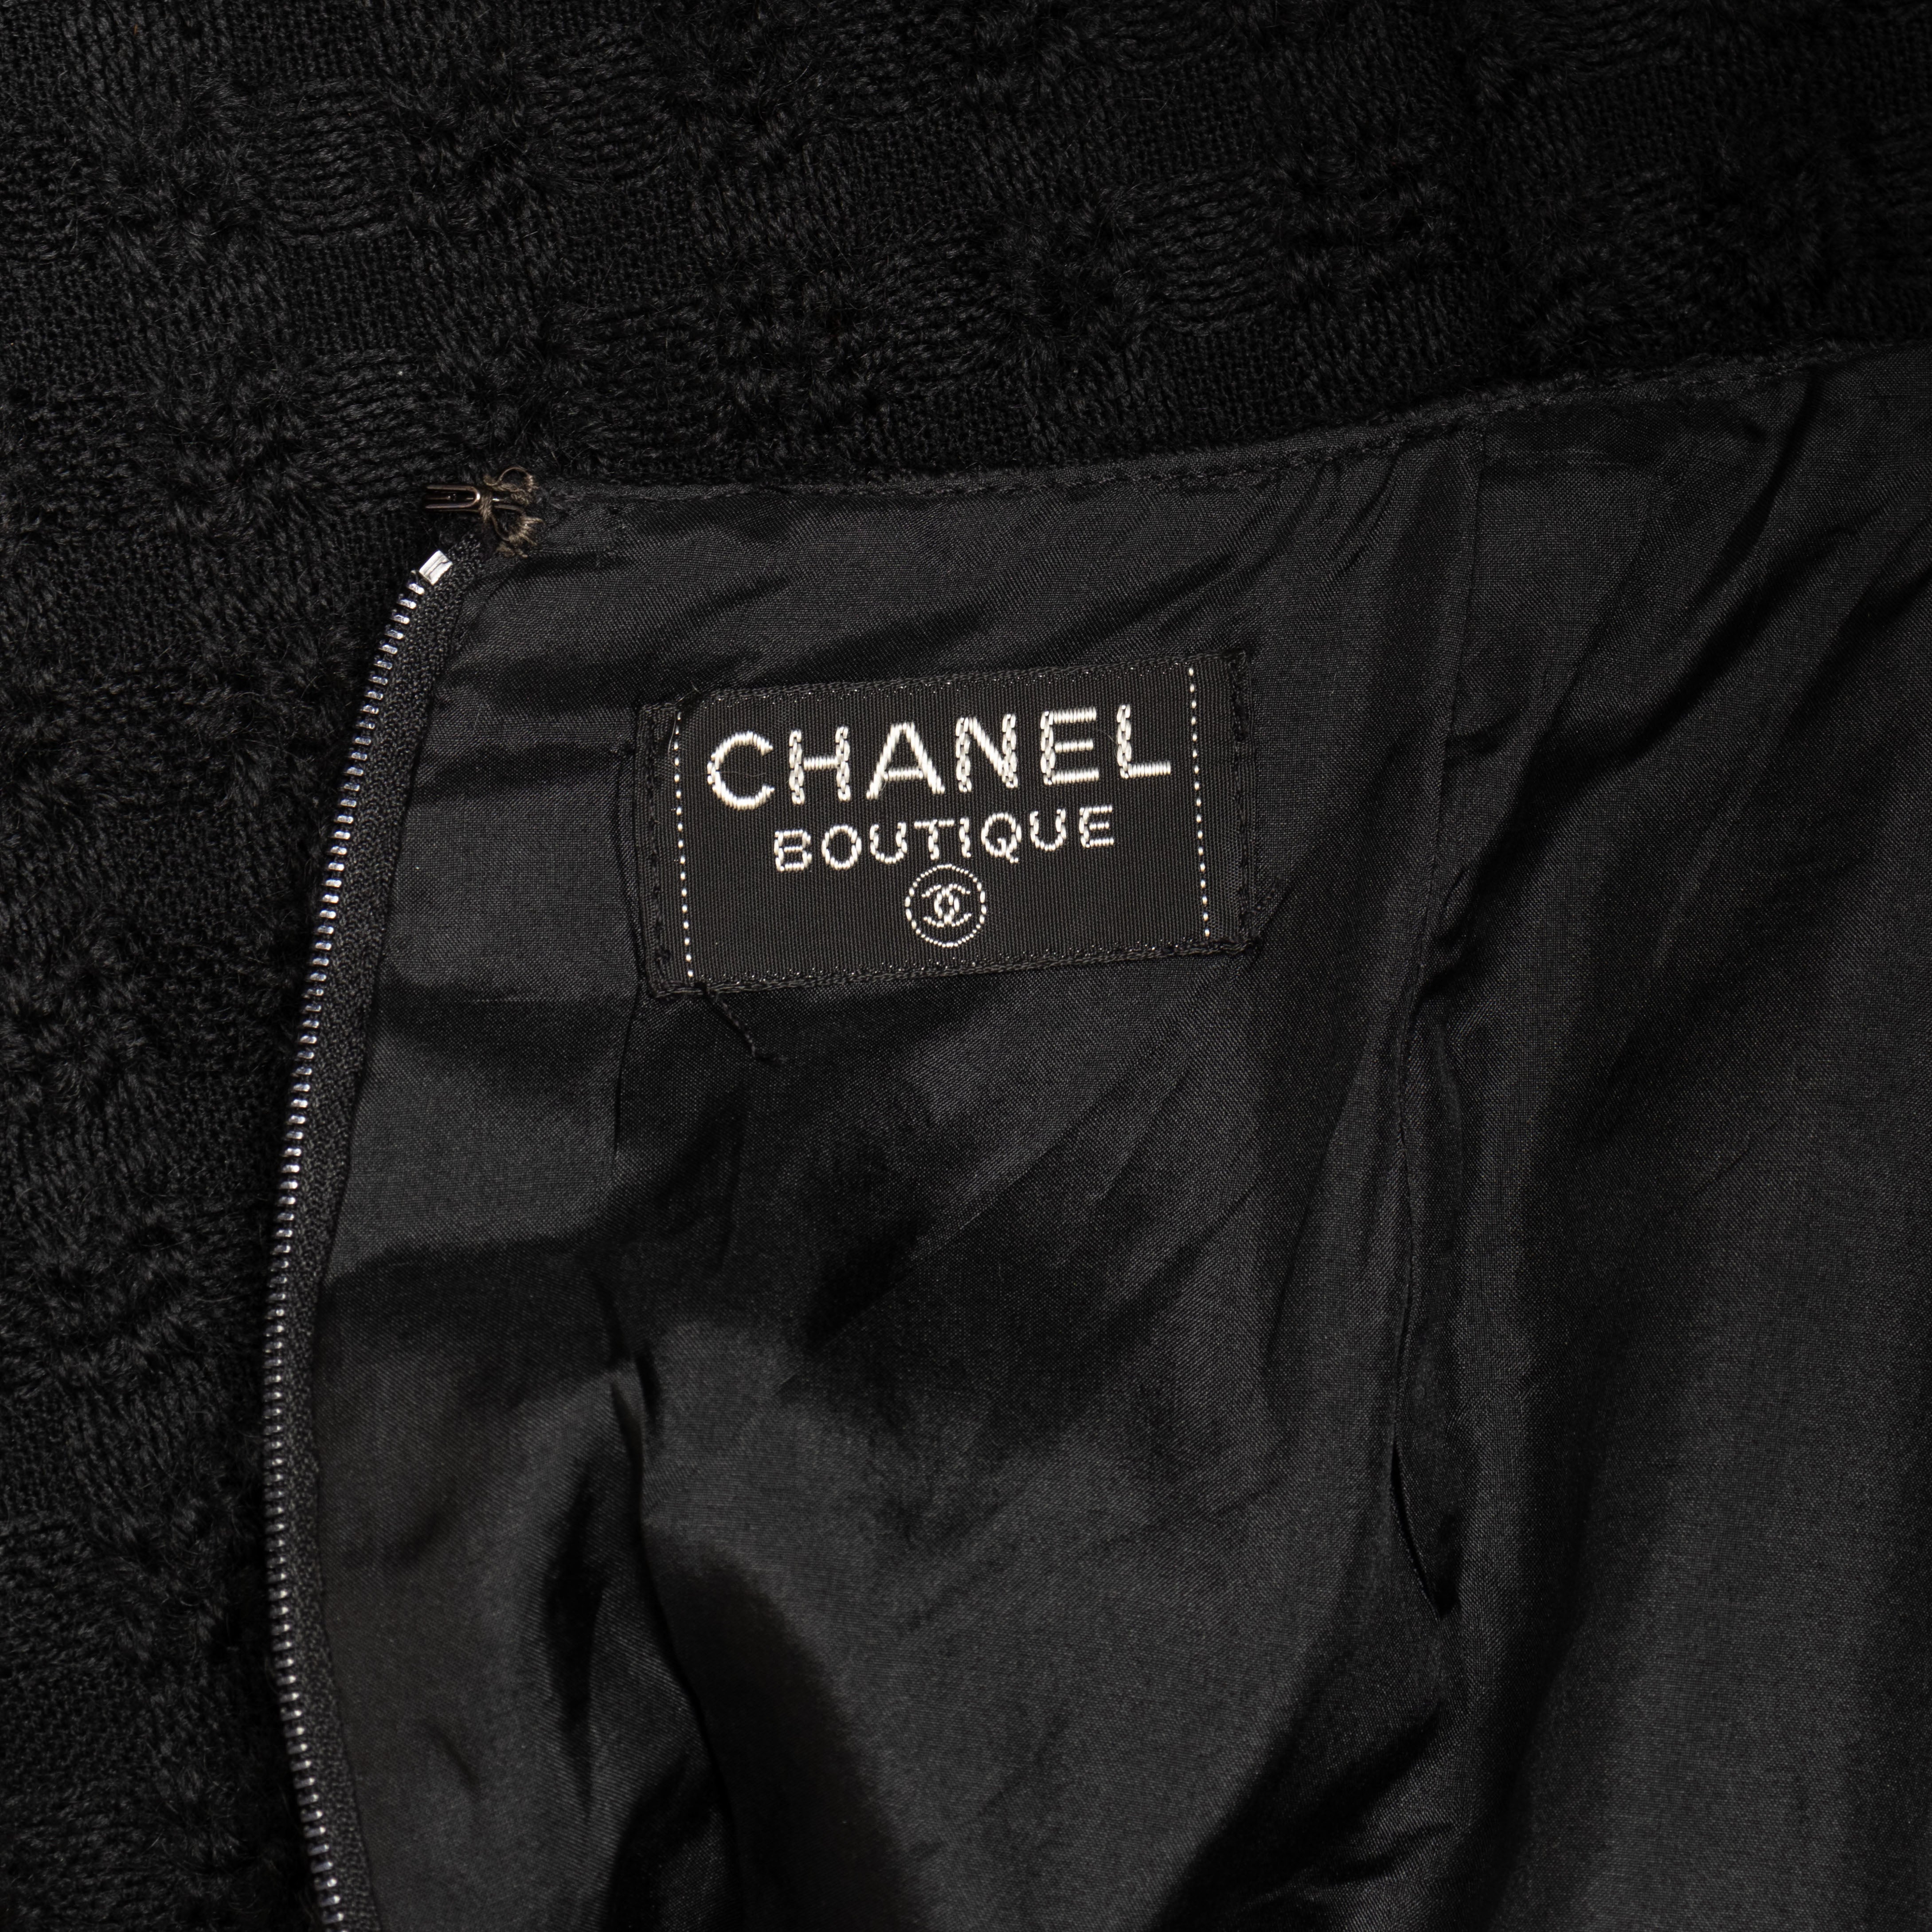 Chanel, black and white boucle jacket - Unique Designer Pieces